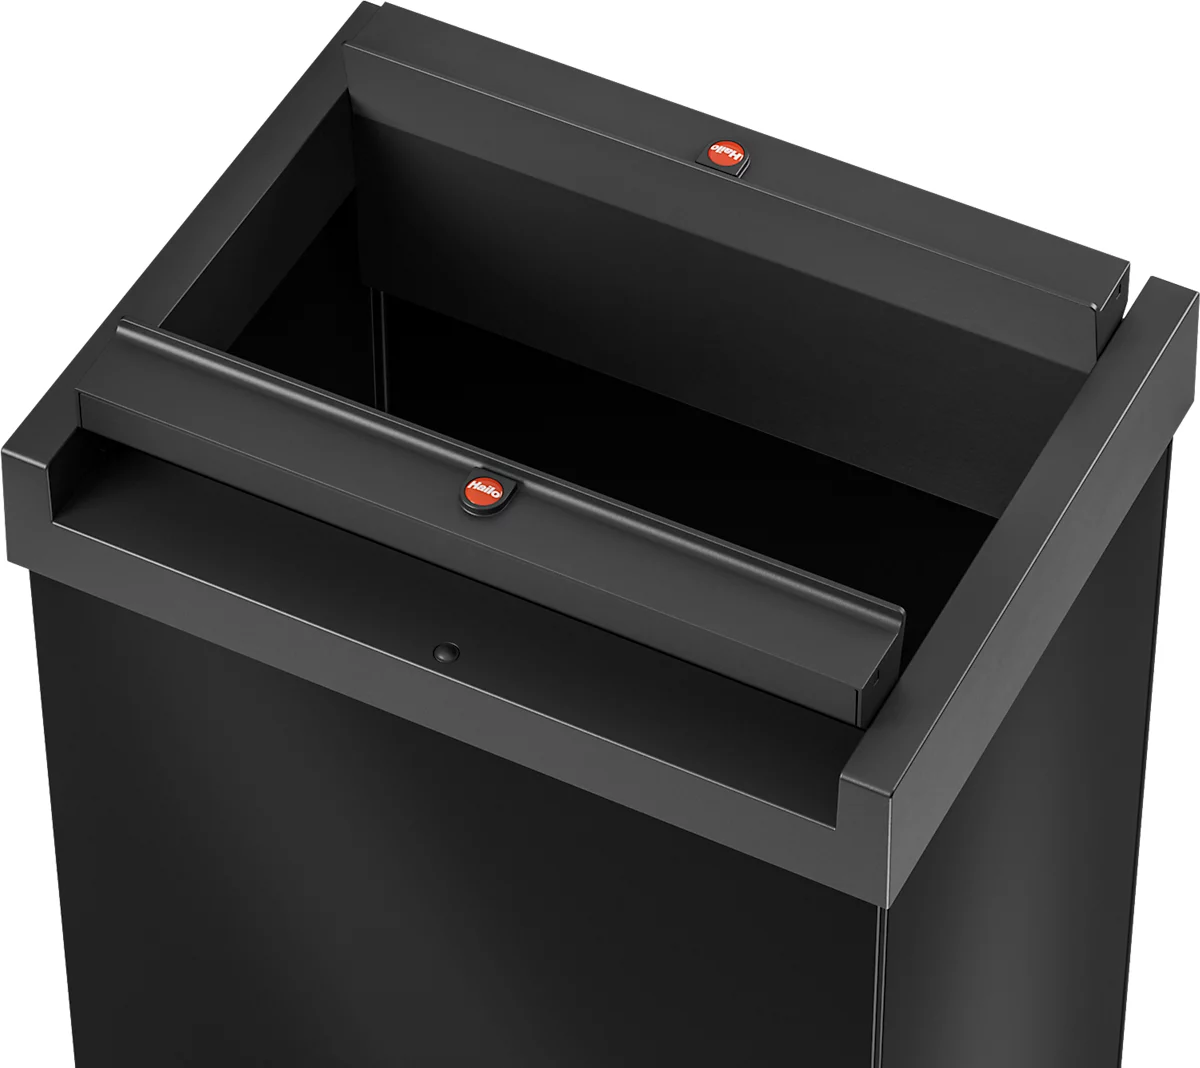 Colector de residuos Hailo Big-Box Swing XL, 52 l, rectangular, tapa basculante, chapa de acero, negro